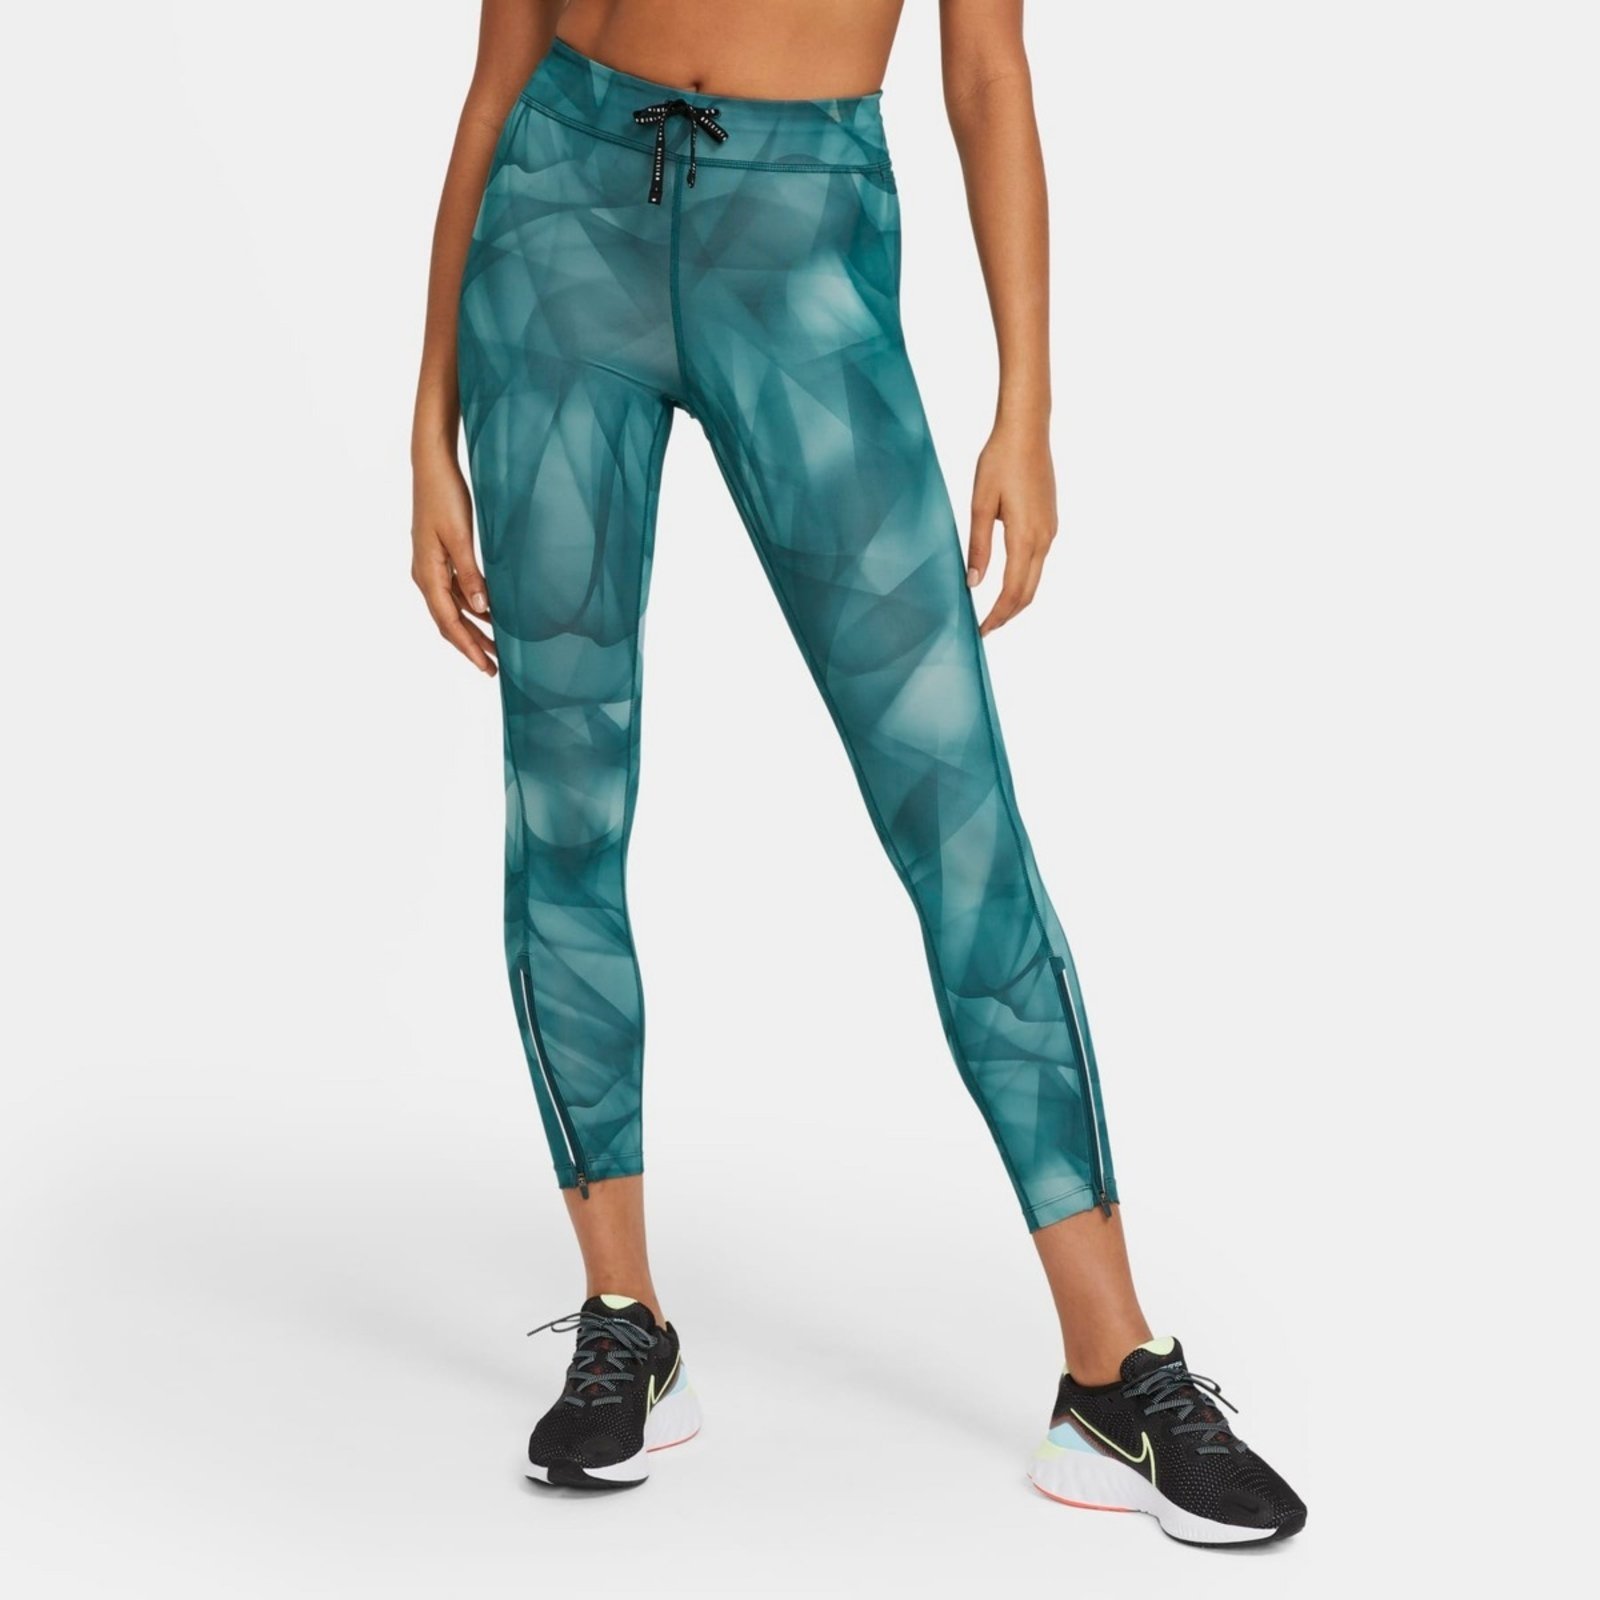 Legging Nike Dri-FIT ADV Run Division Epic Luxe Feminina - Compre Agora